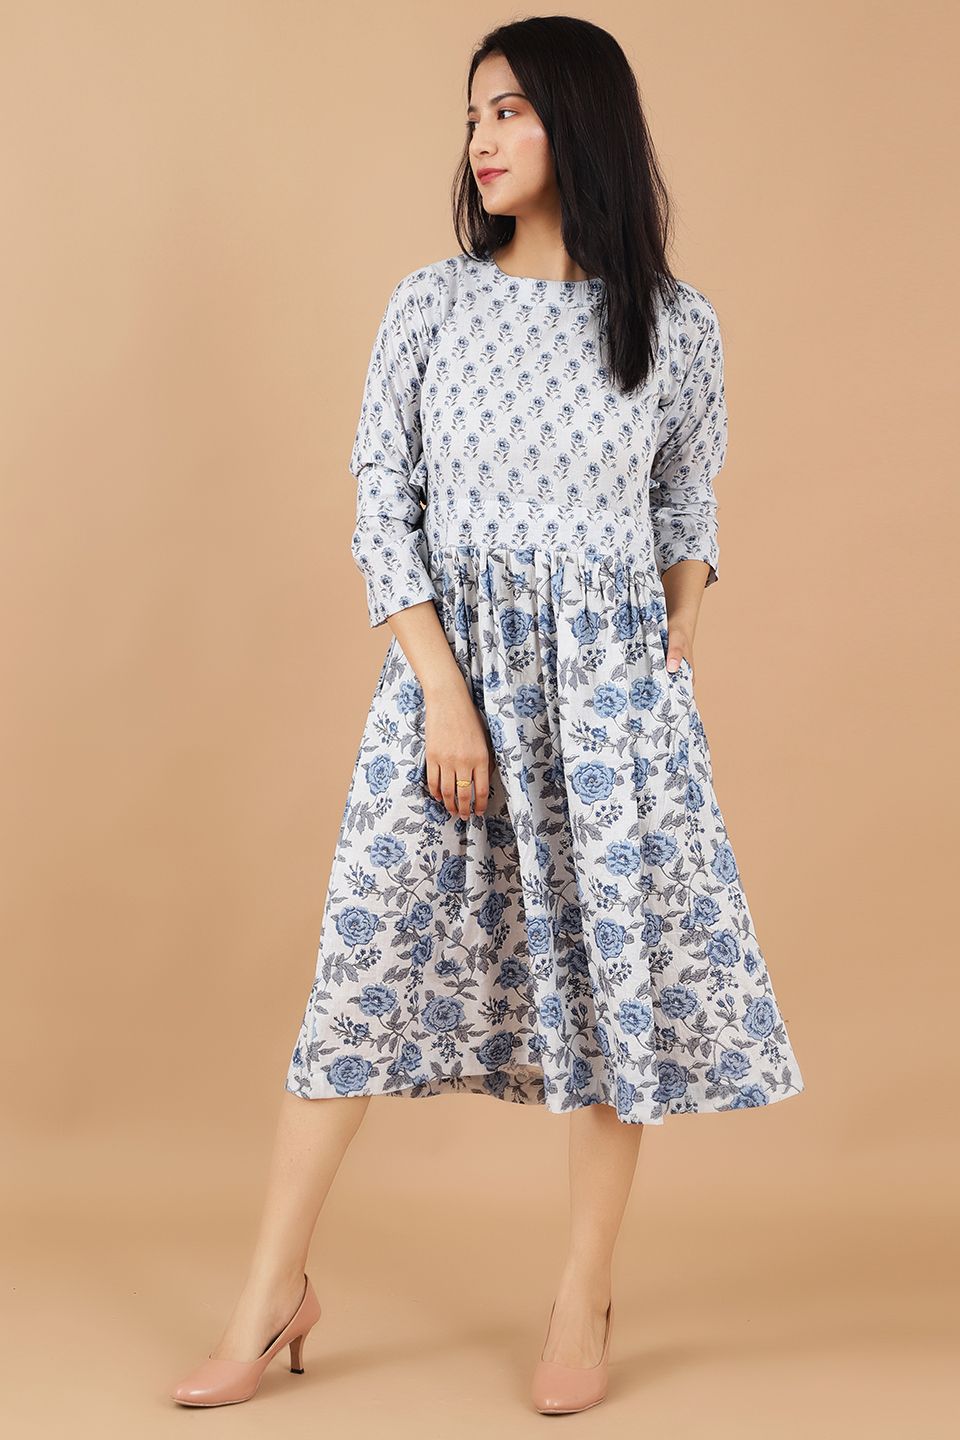 Jaipur Cotton Blue Dress